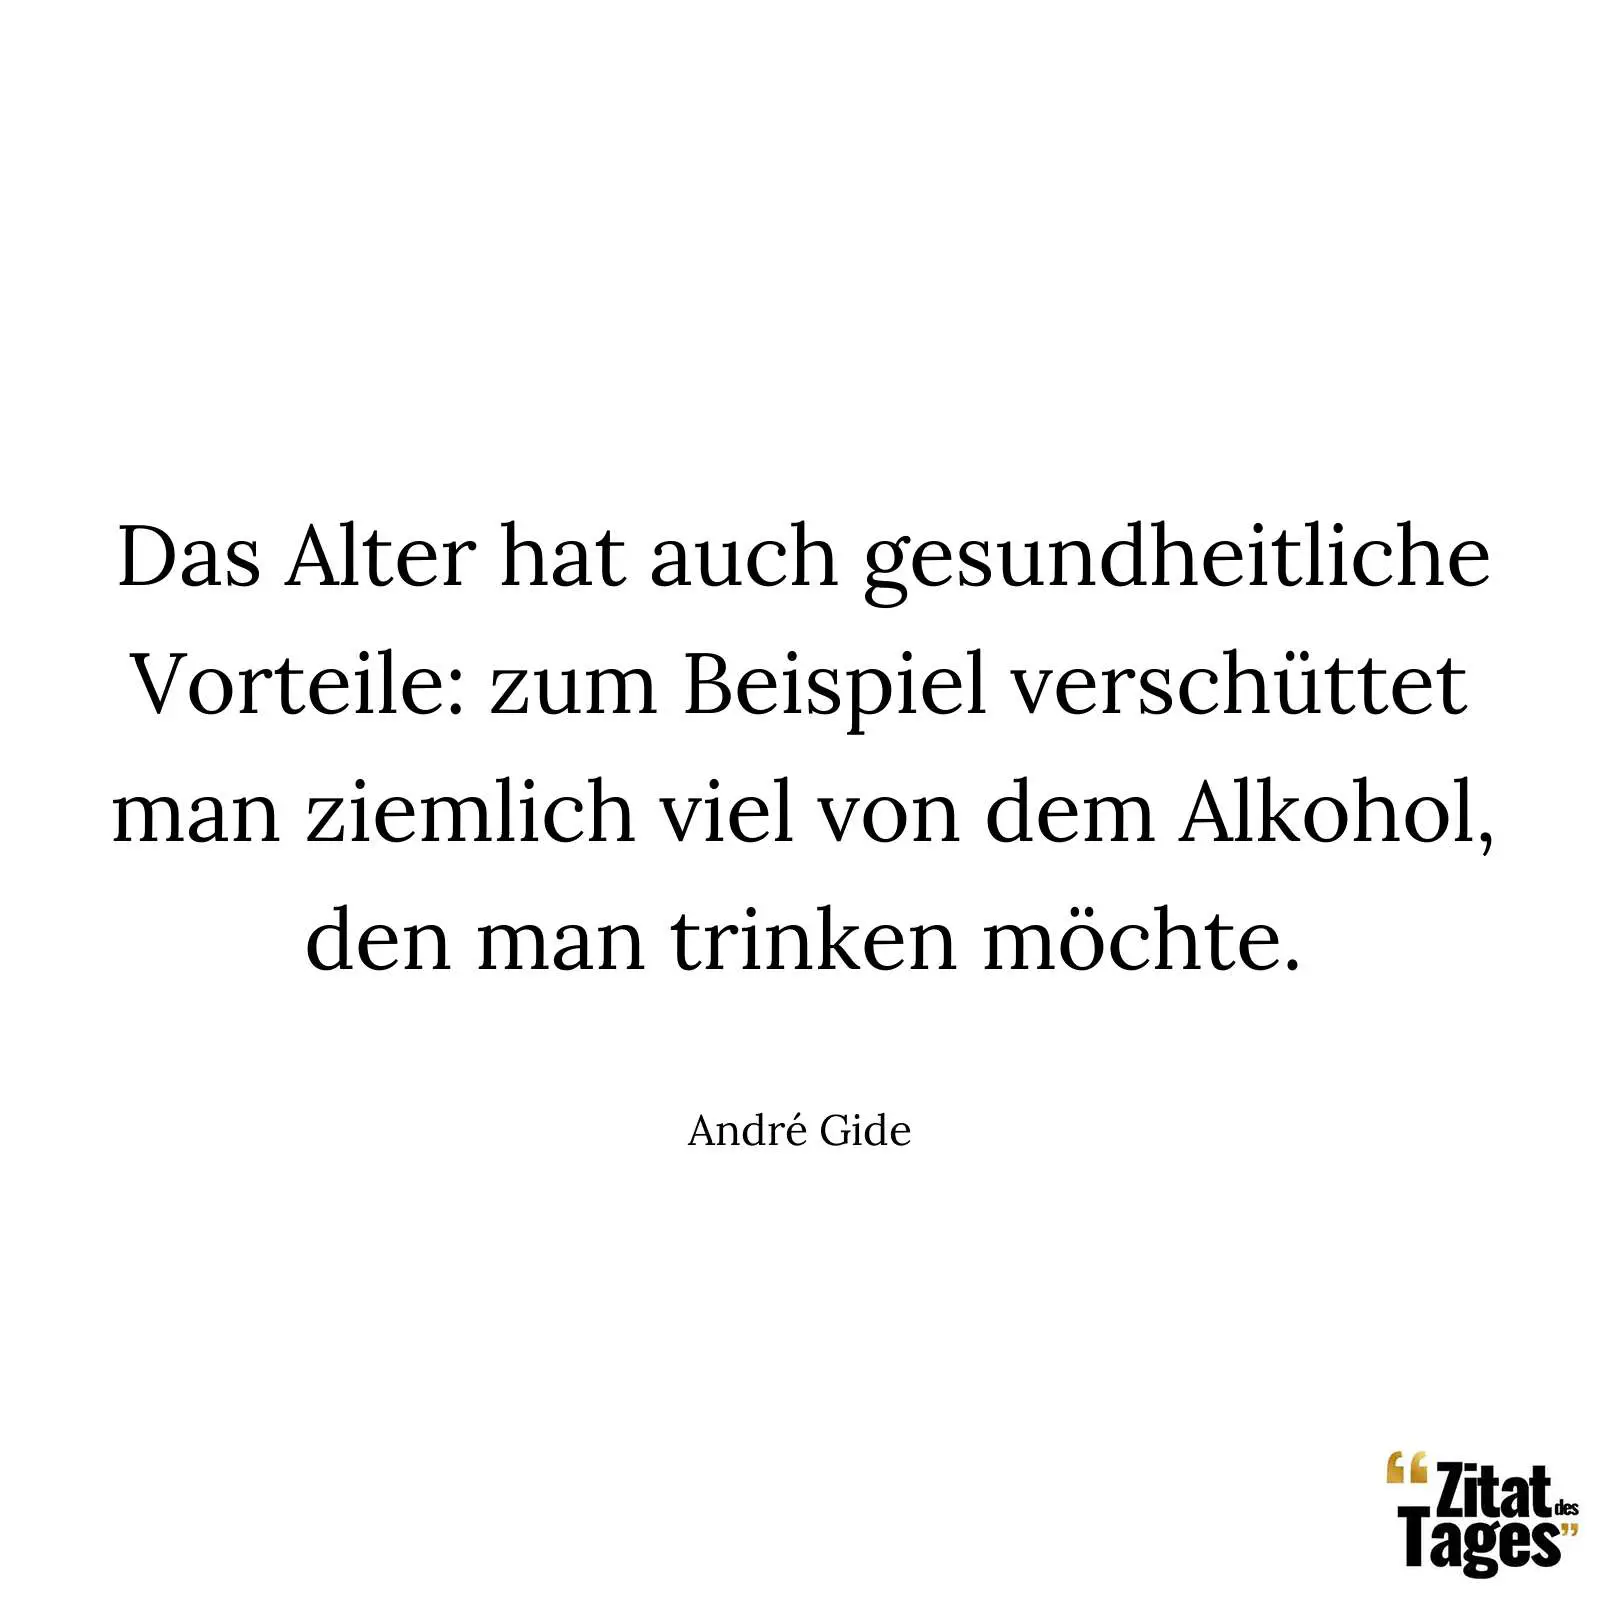 Das Alter hat auch gesundheitliche Vorteile: zum Beispiel verschüttet man ziemlich viel von dem Alkohol, den man trinken möchte. - André Gide